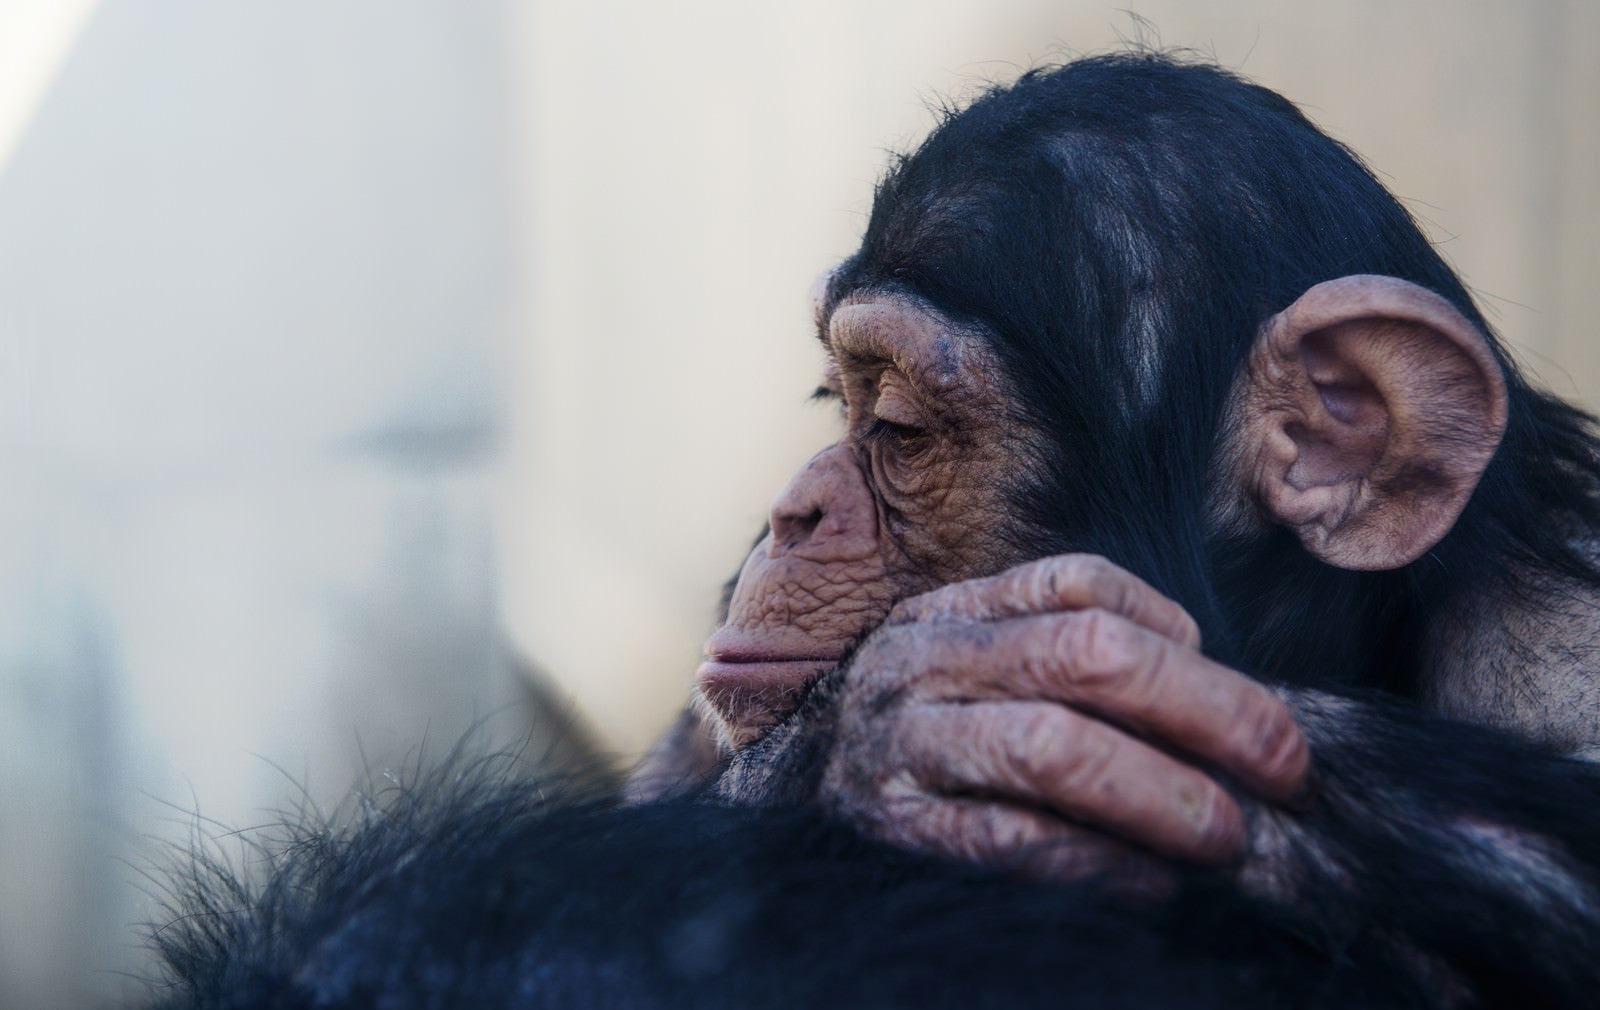 「落胆する表情のチンパンジー」の写真